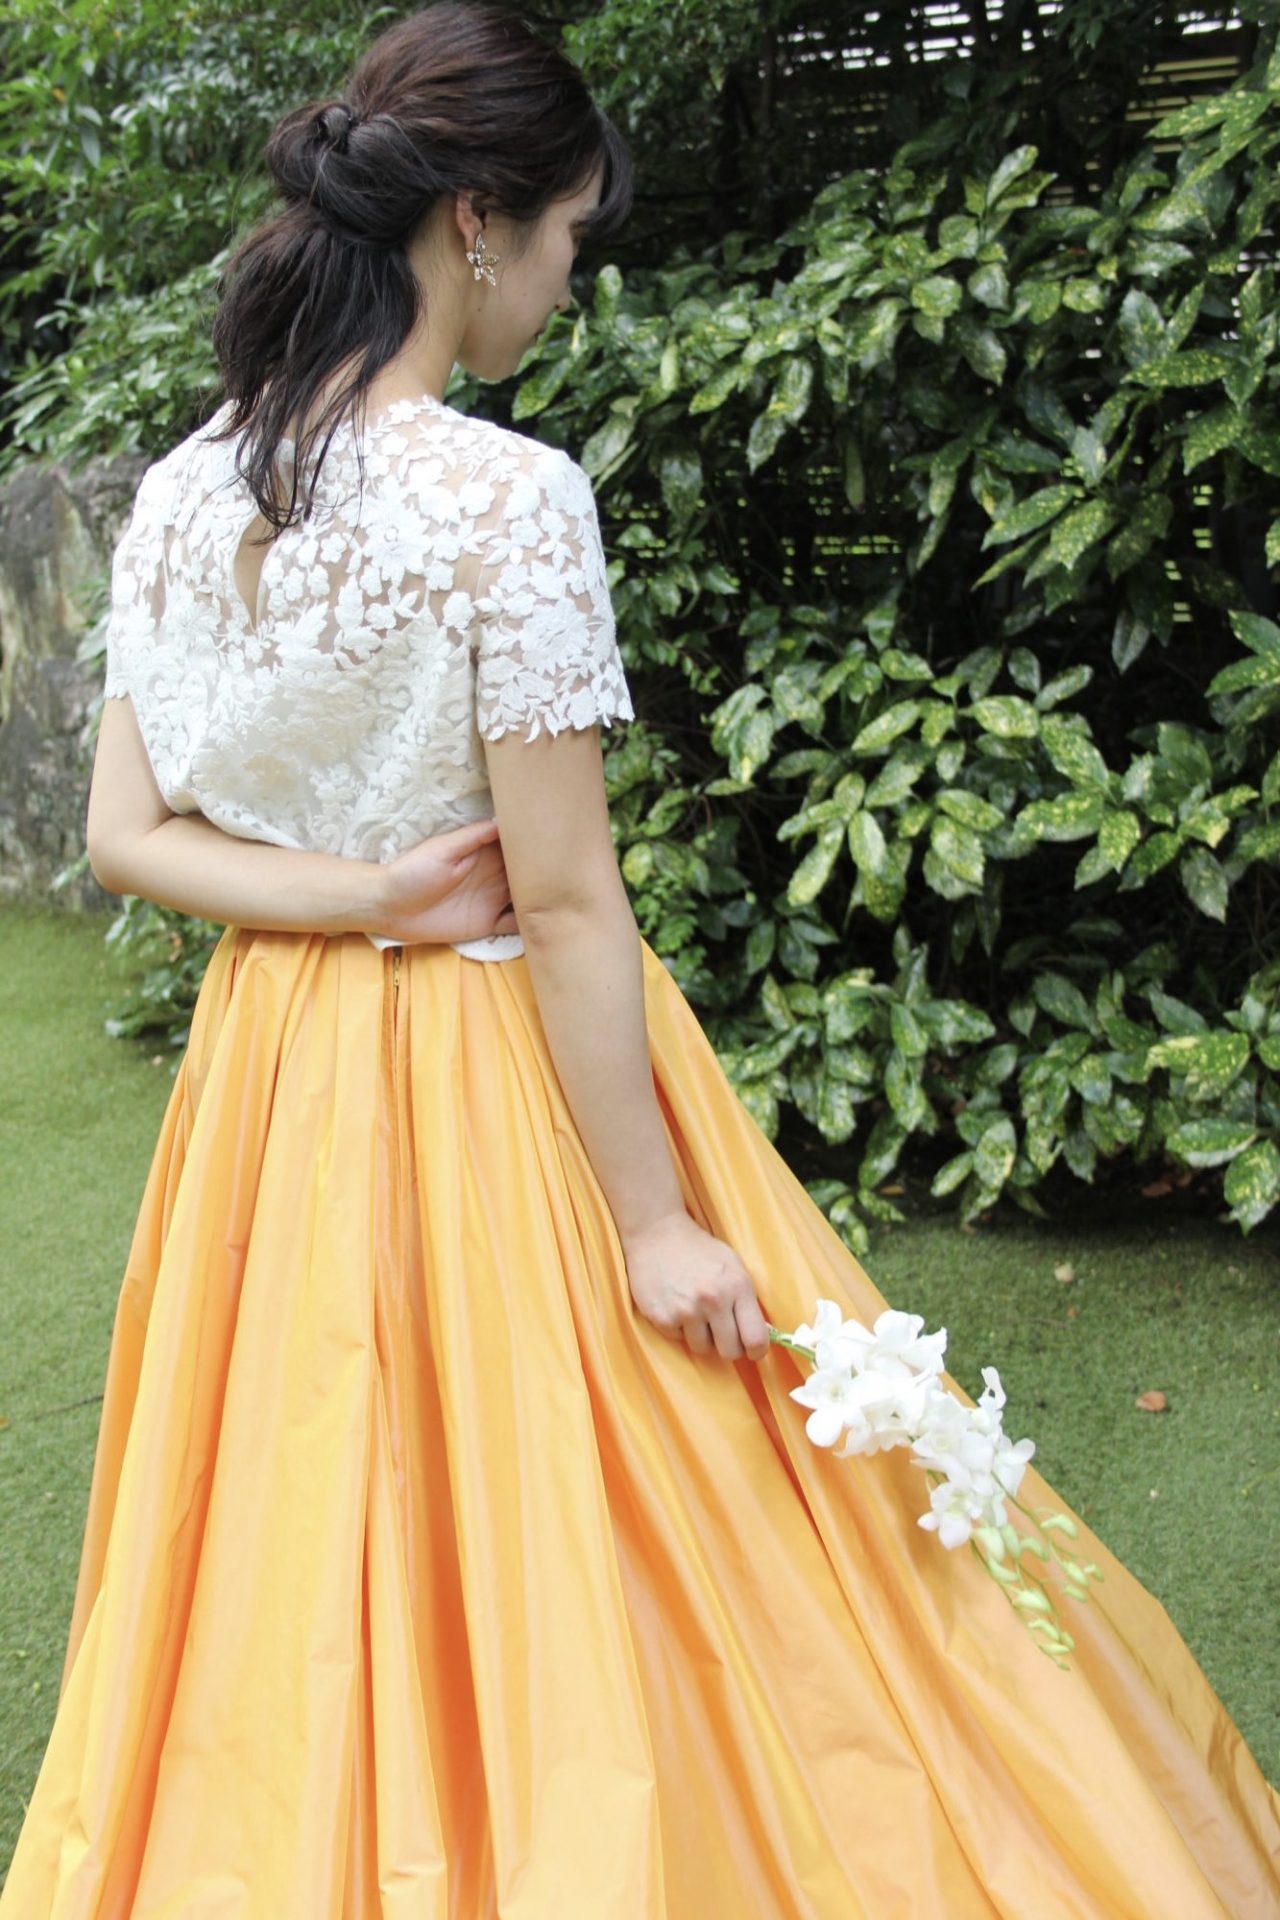 ザナンザンハウスにオススメのオレンジのカラードレスのご紹介